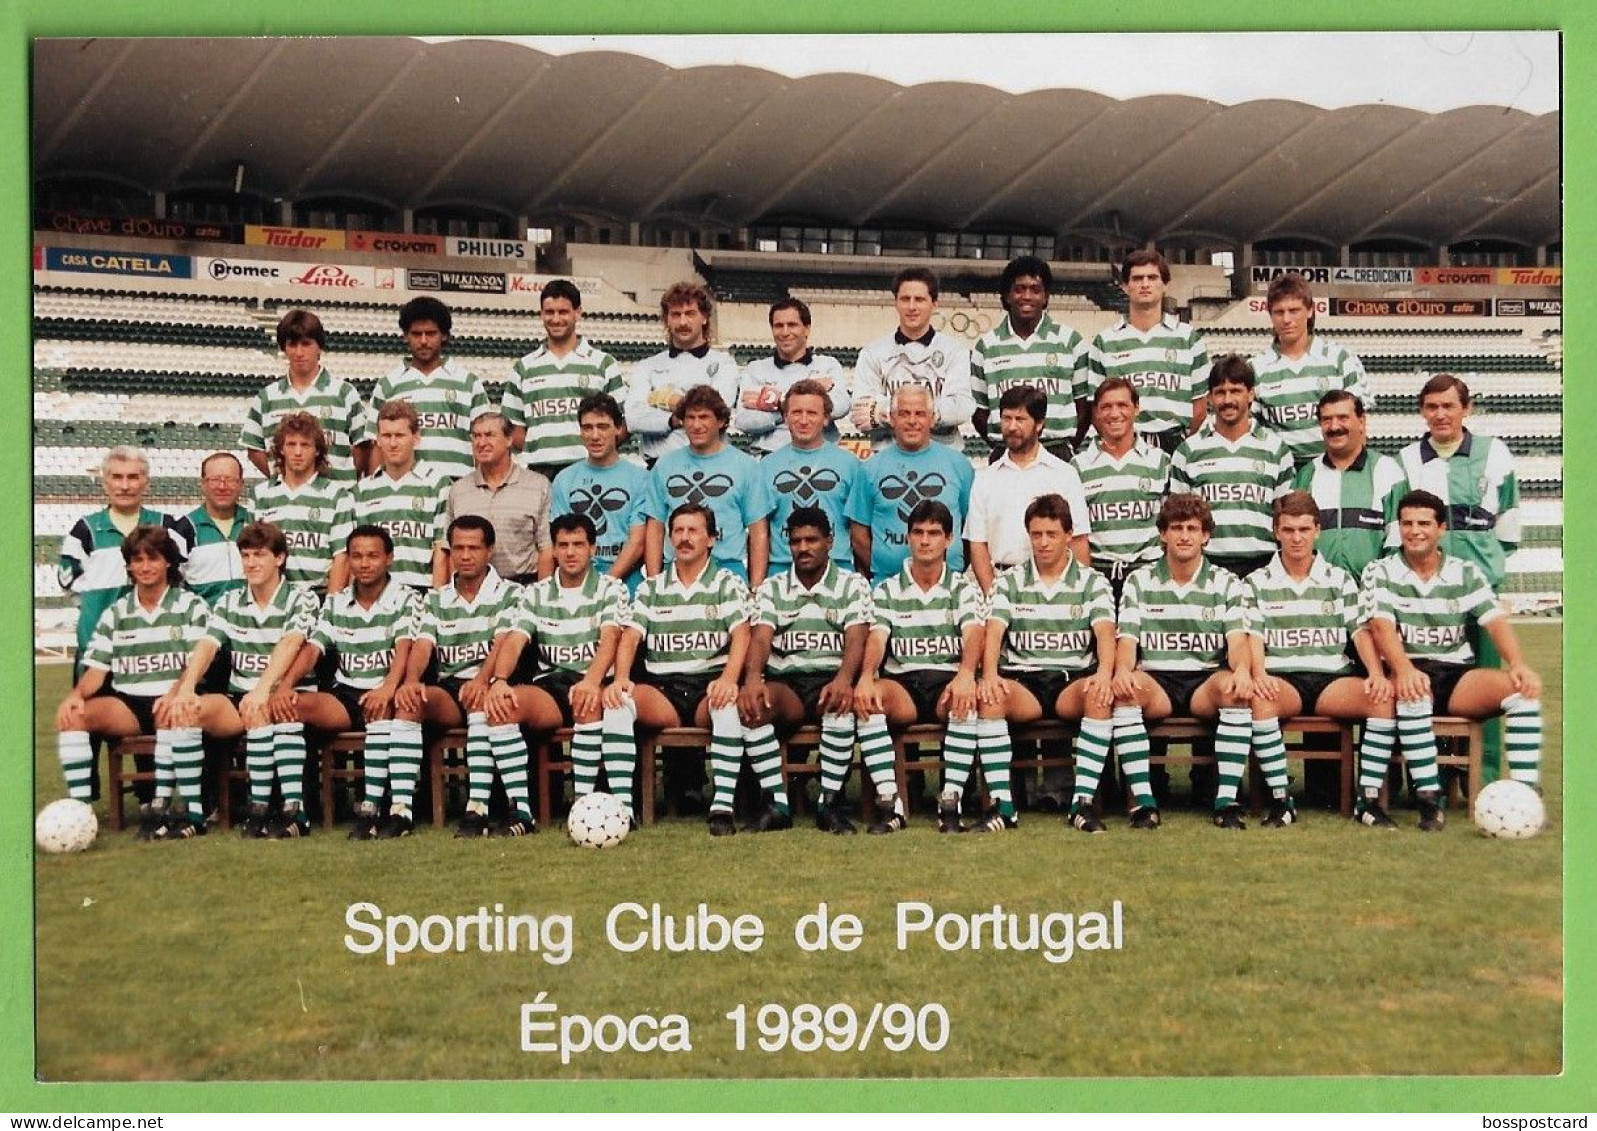 Lisboa - REAL PHOTO - Equipa De Futebol Do Sporting Clube De Portugal - Estádio - Football - Stadium - Portugal - Calcio